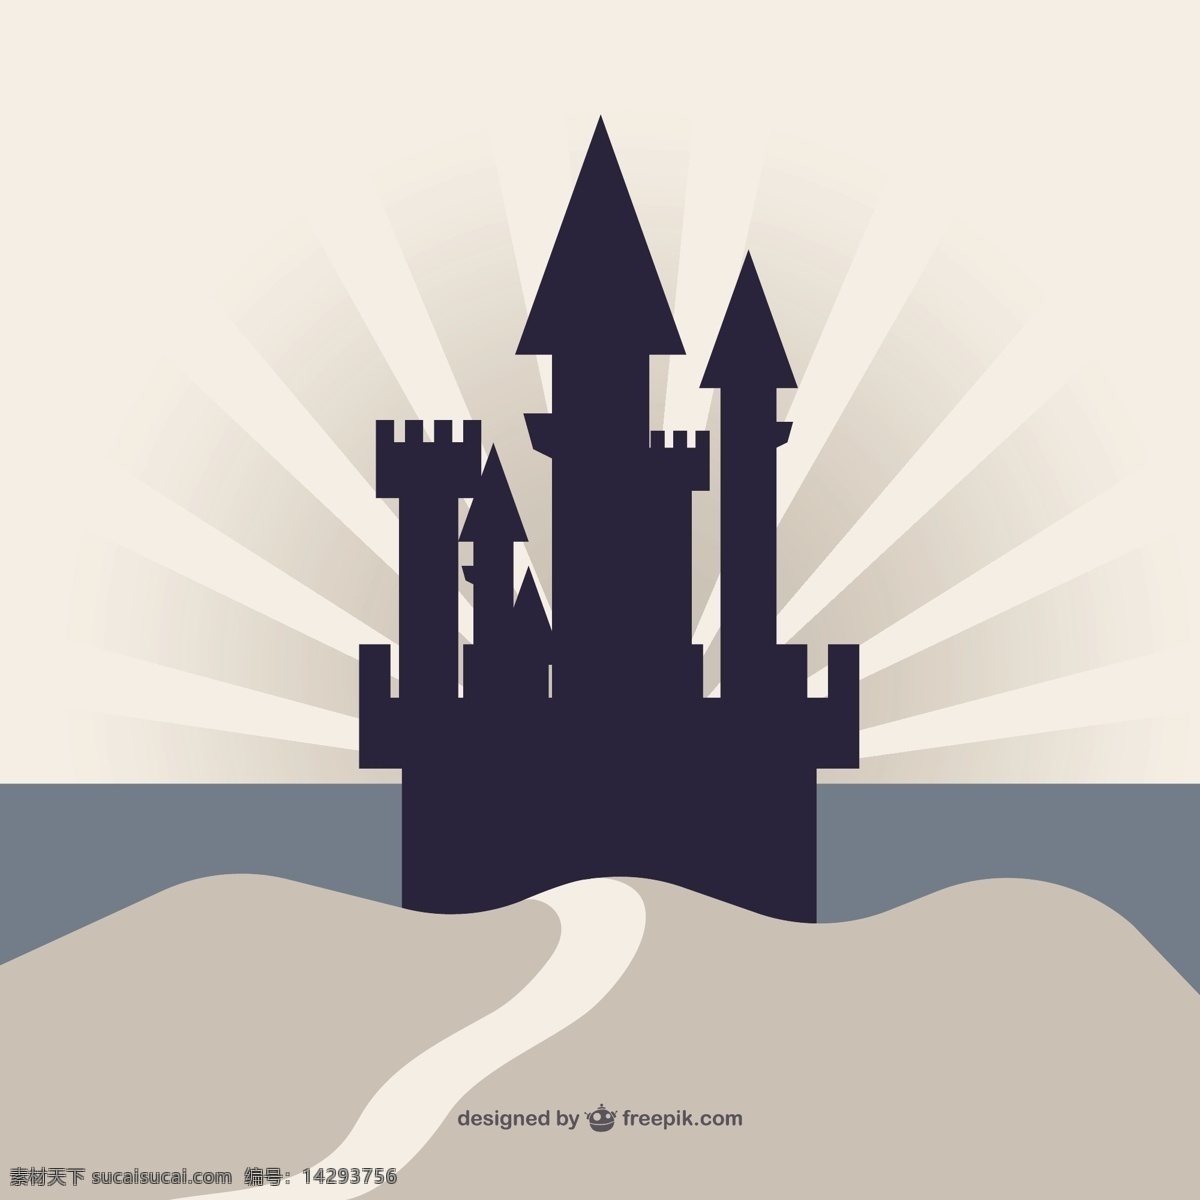 悬崖 上 城堡 轮廓 背景 illustrator 剪影 元素 老 ui 界面 高清 时尚 ui元素 垂直的悬崖 嗨 高清晰度 分辨率 白色